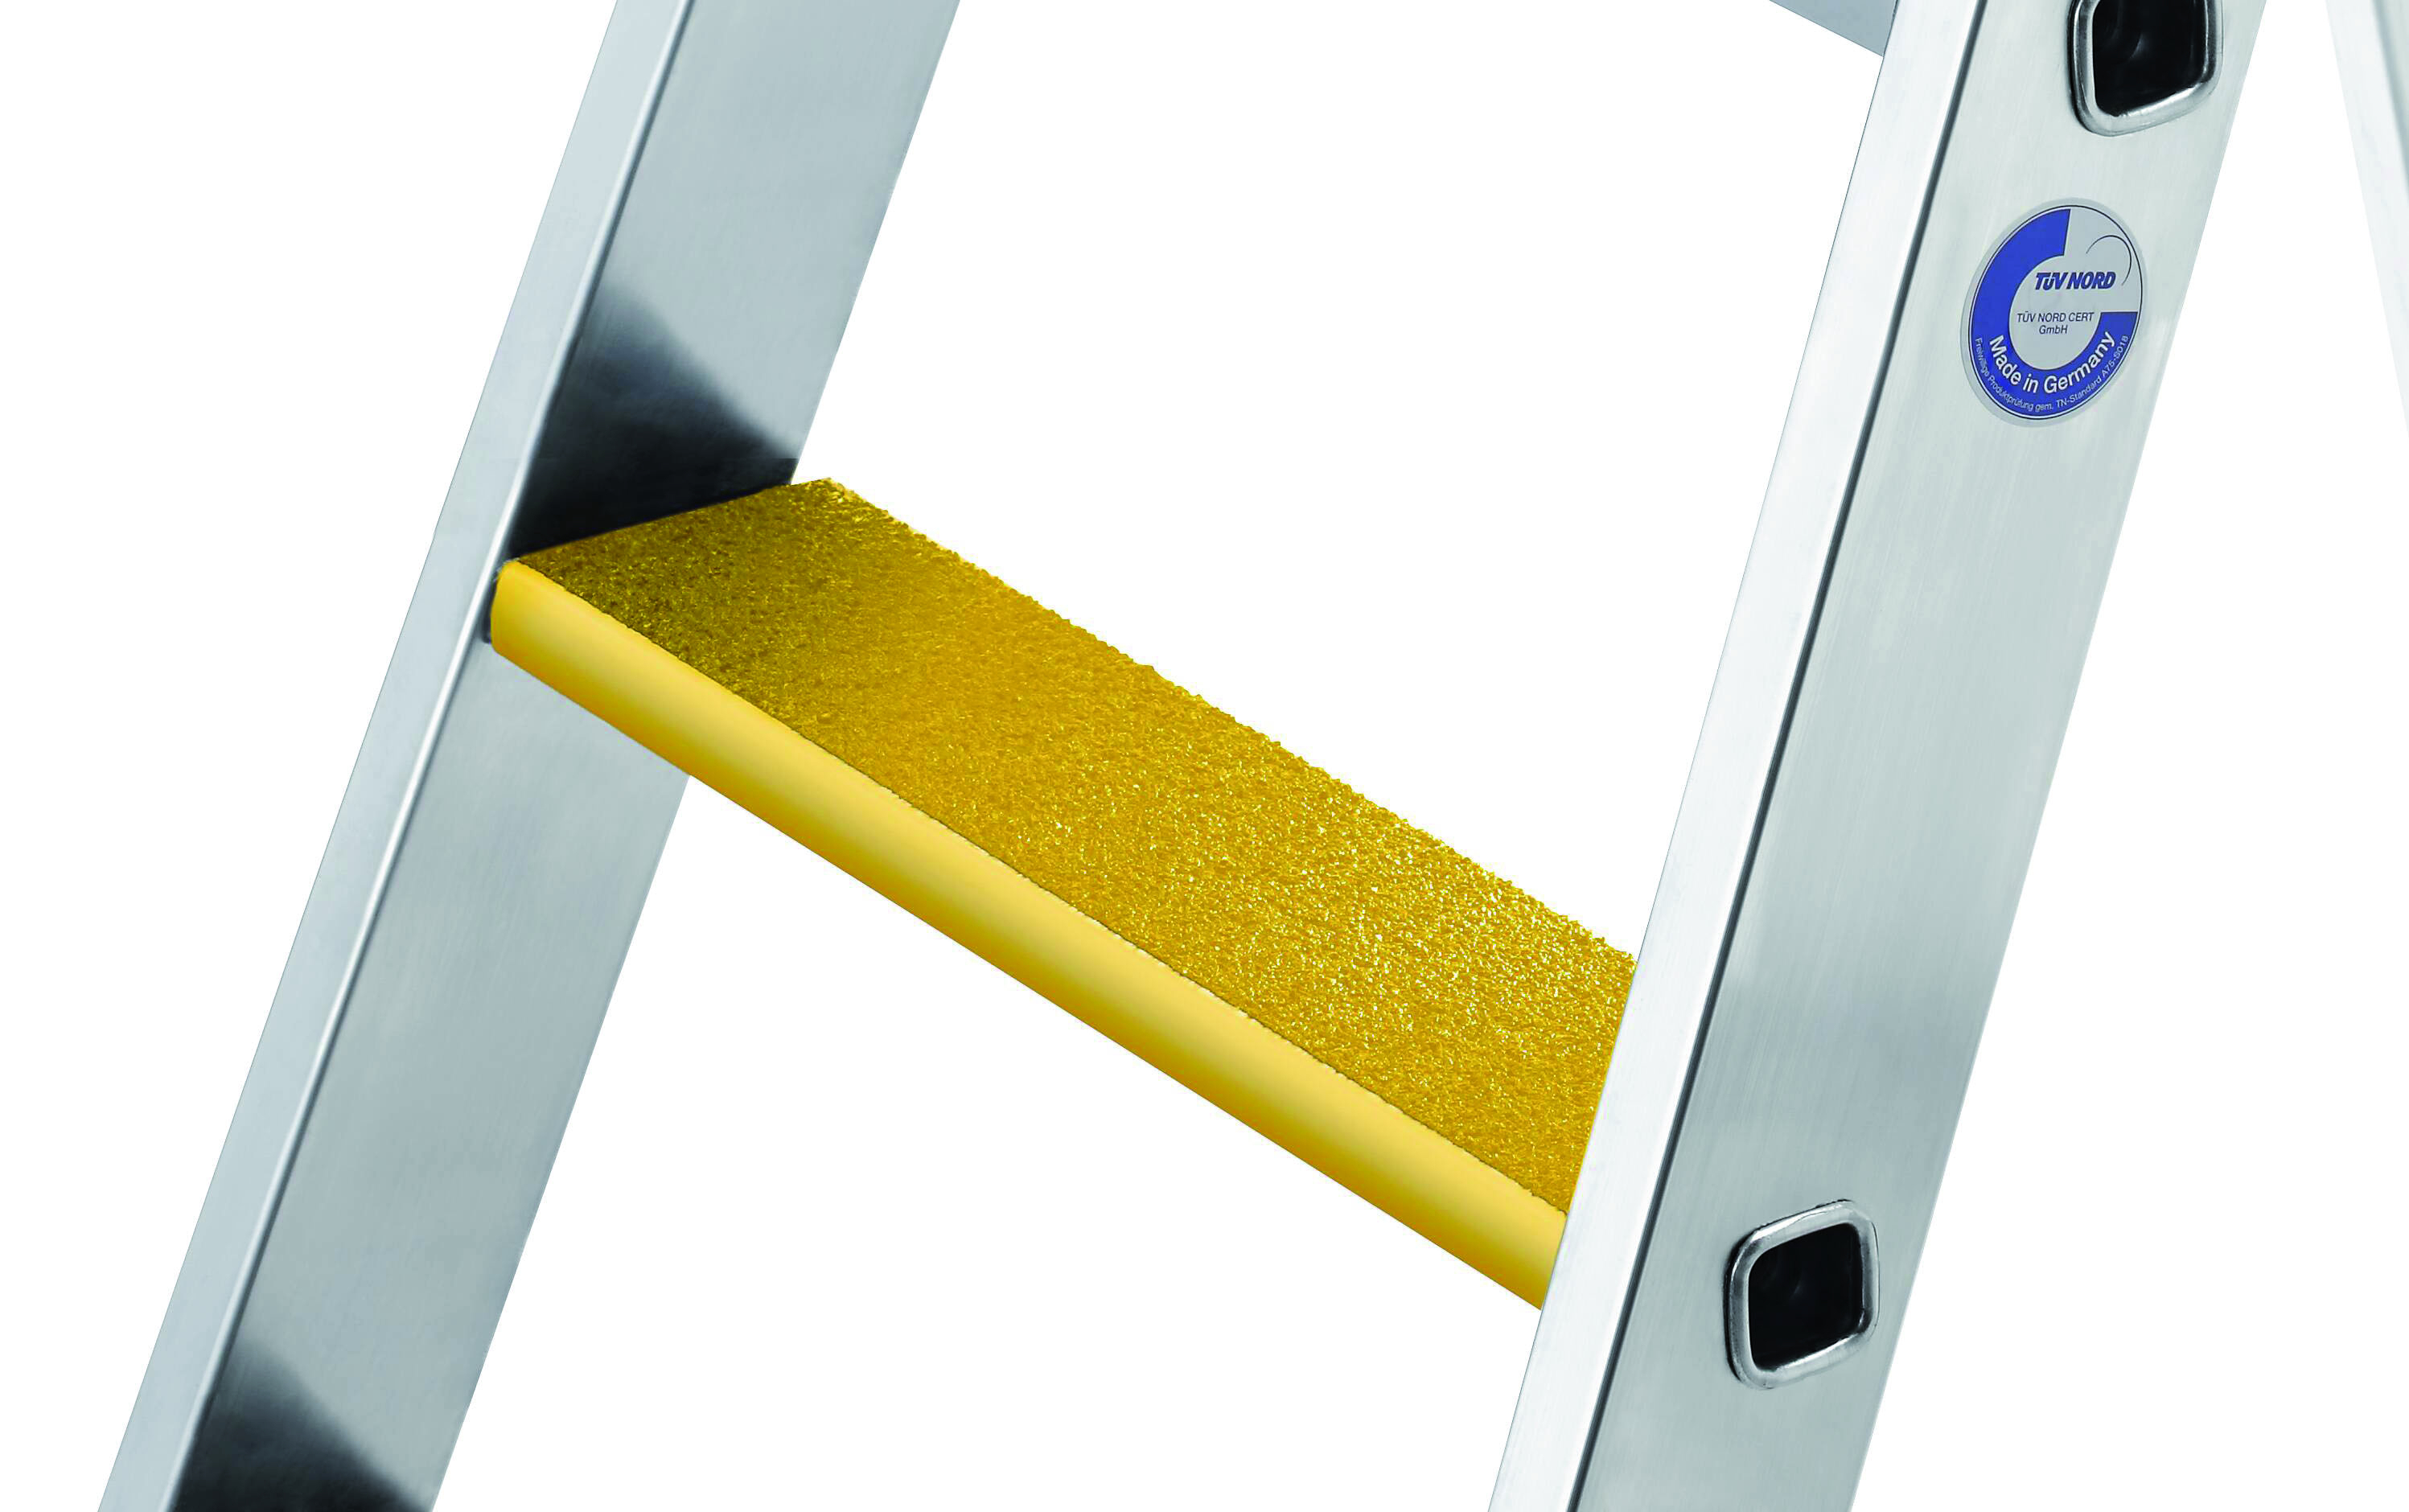 Nachrüstsatz Trittauflage clip-step R 13 gelb, 466 mm